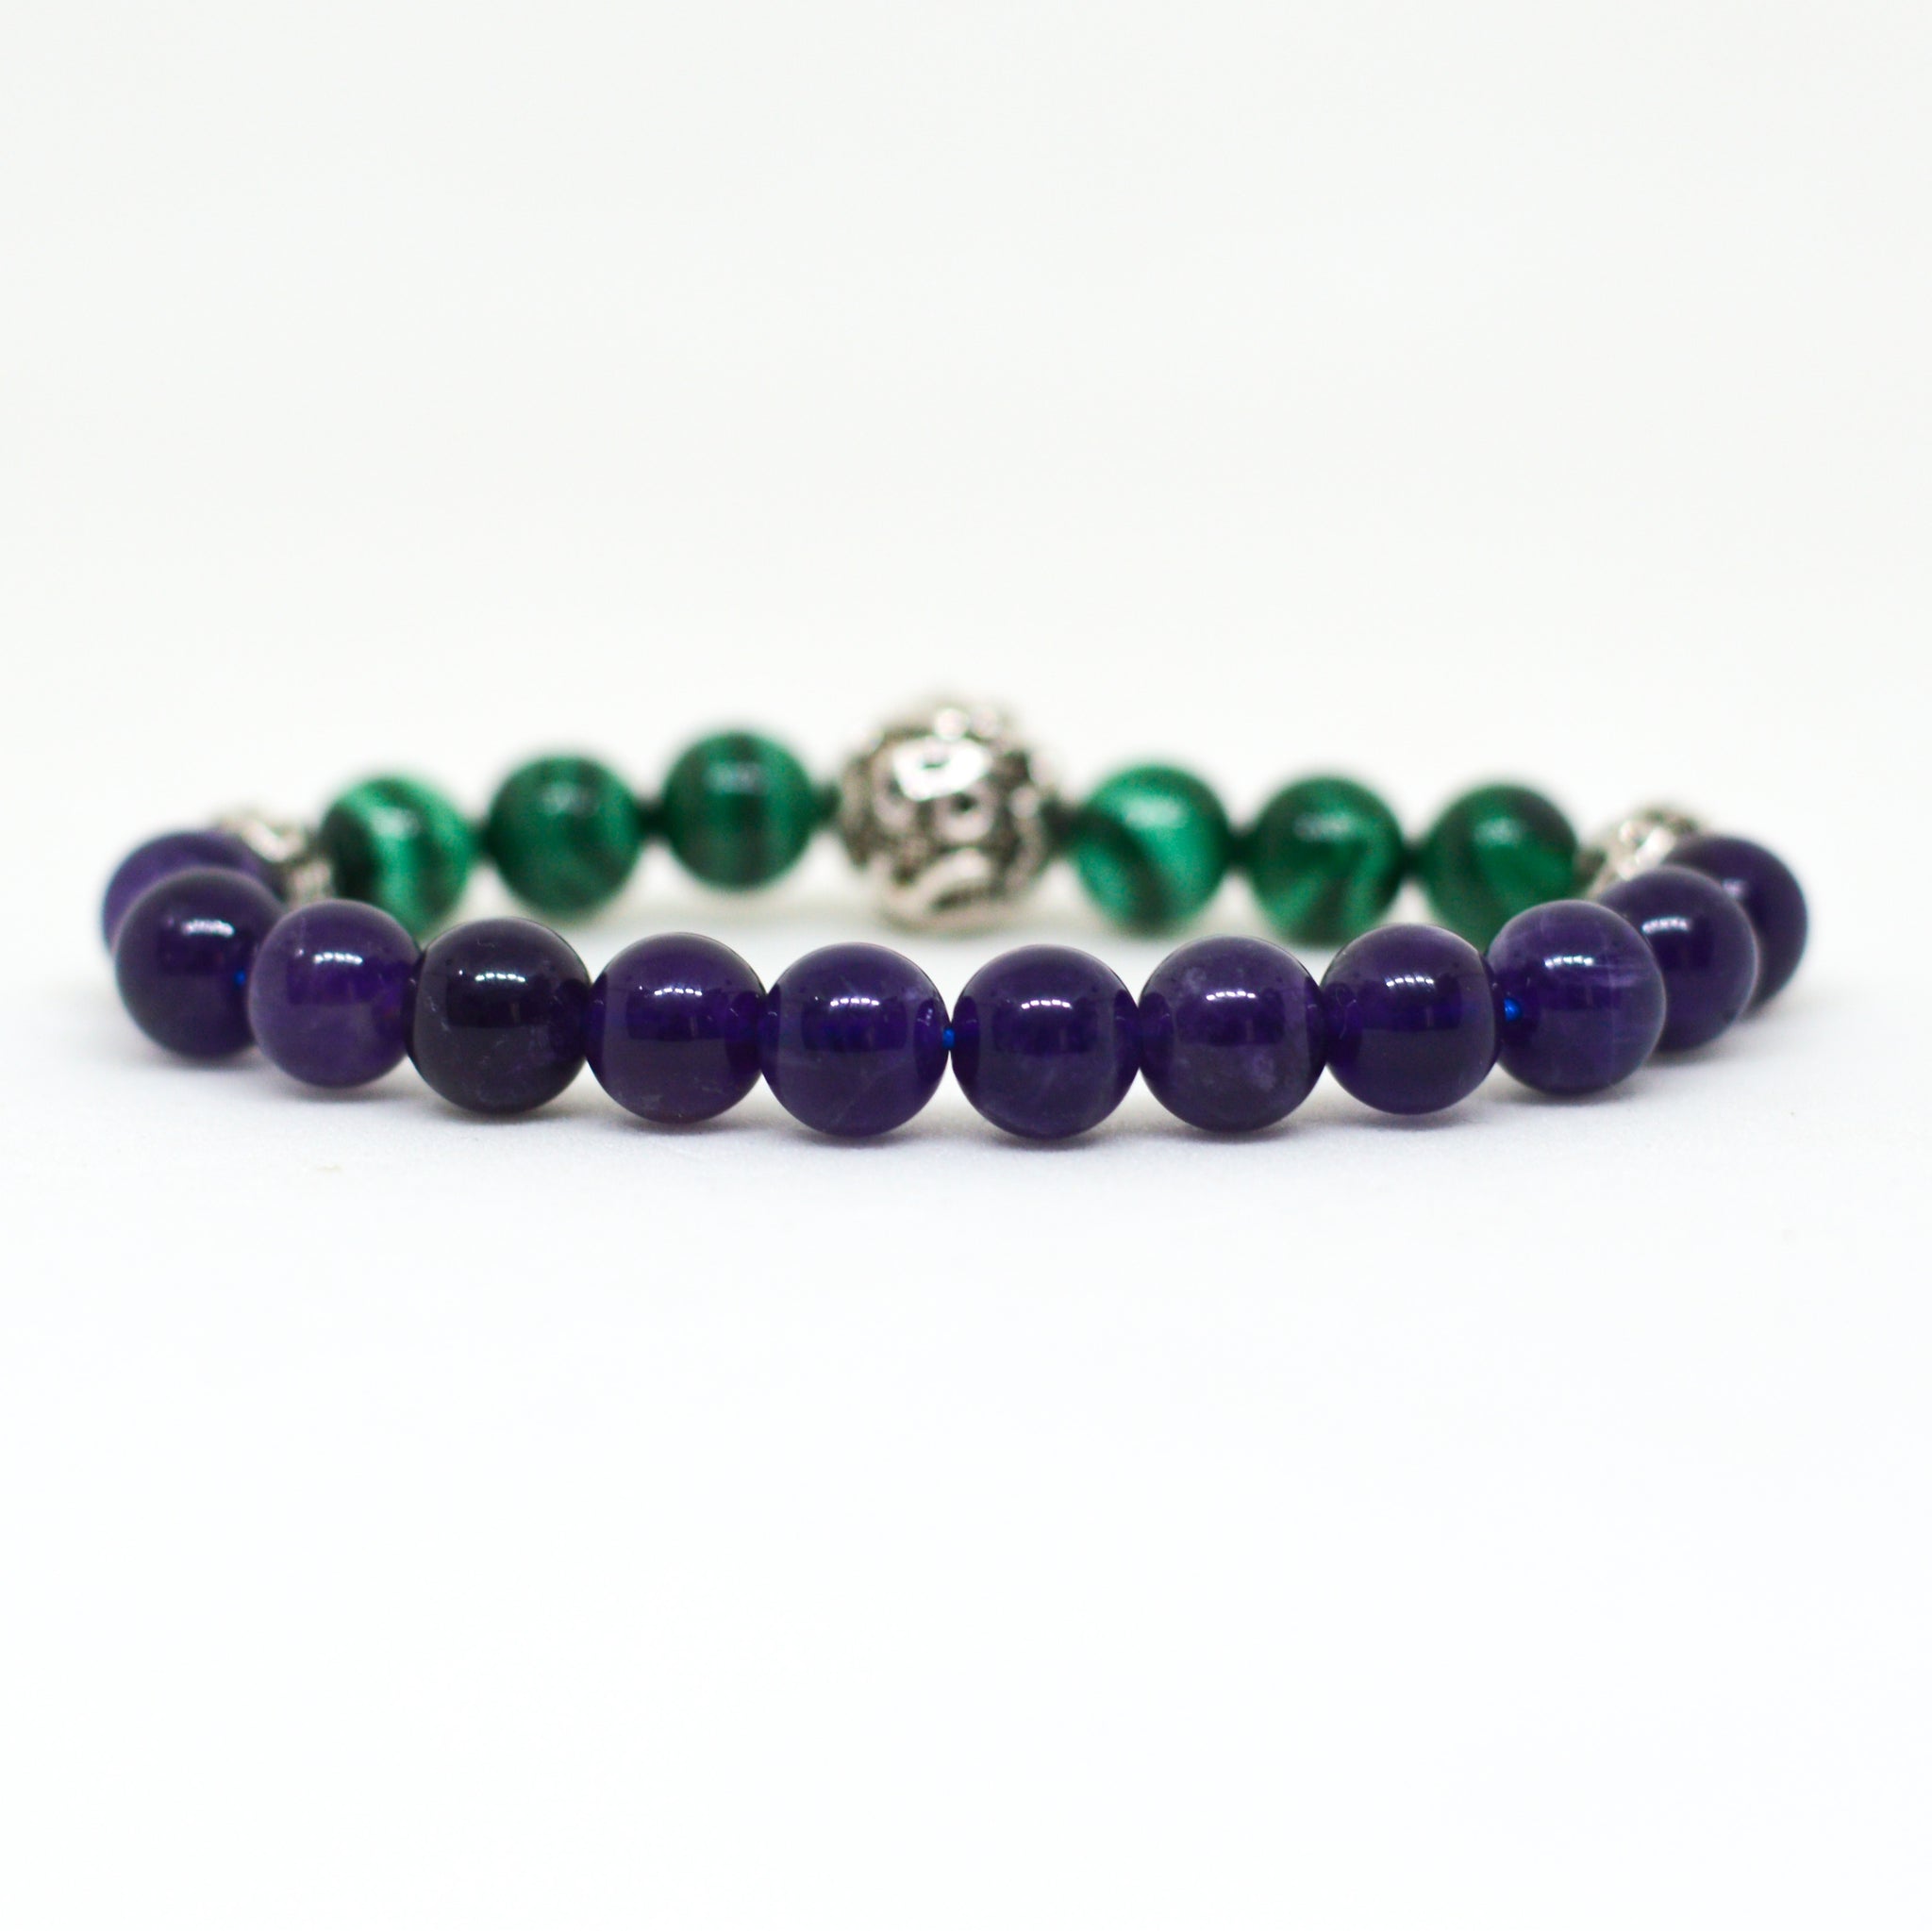 Lava Stone and Malachite Mala and Beads Wrist Bracelet